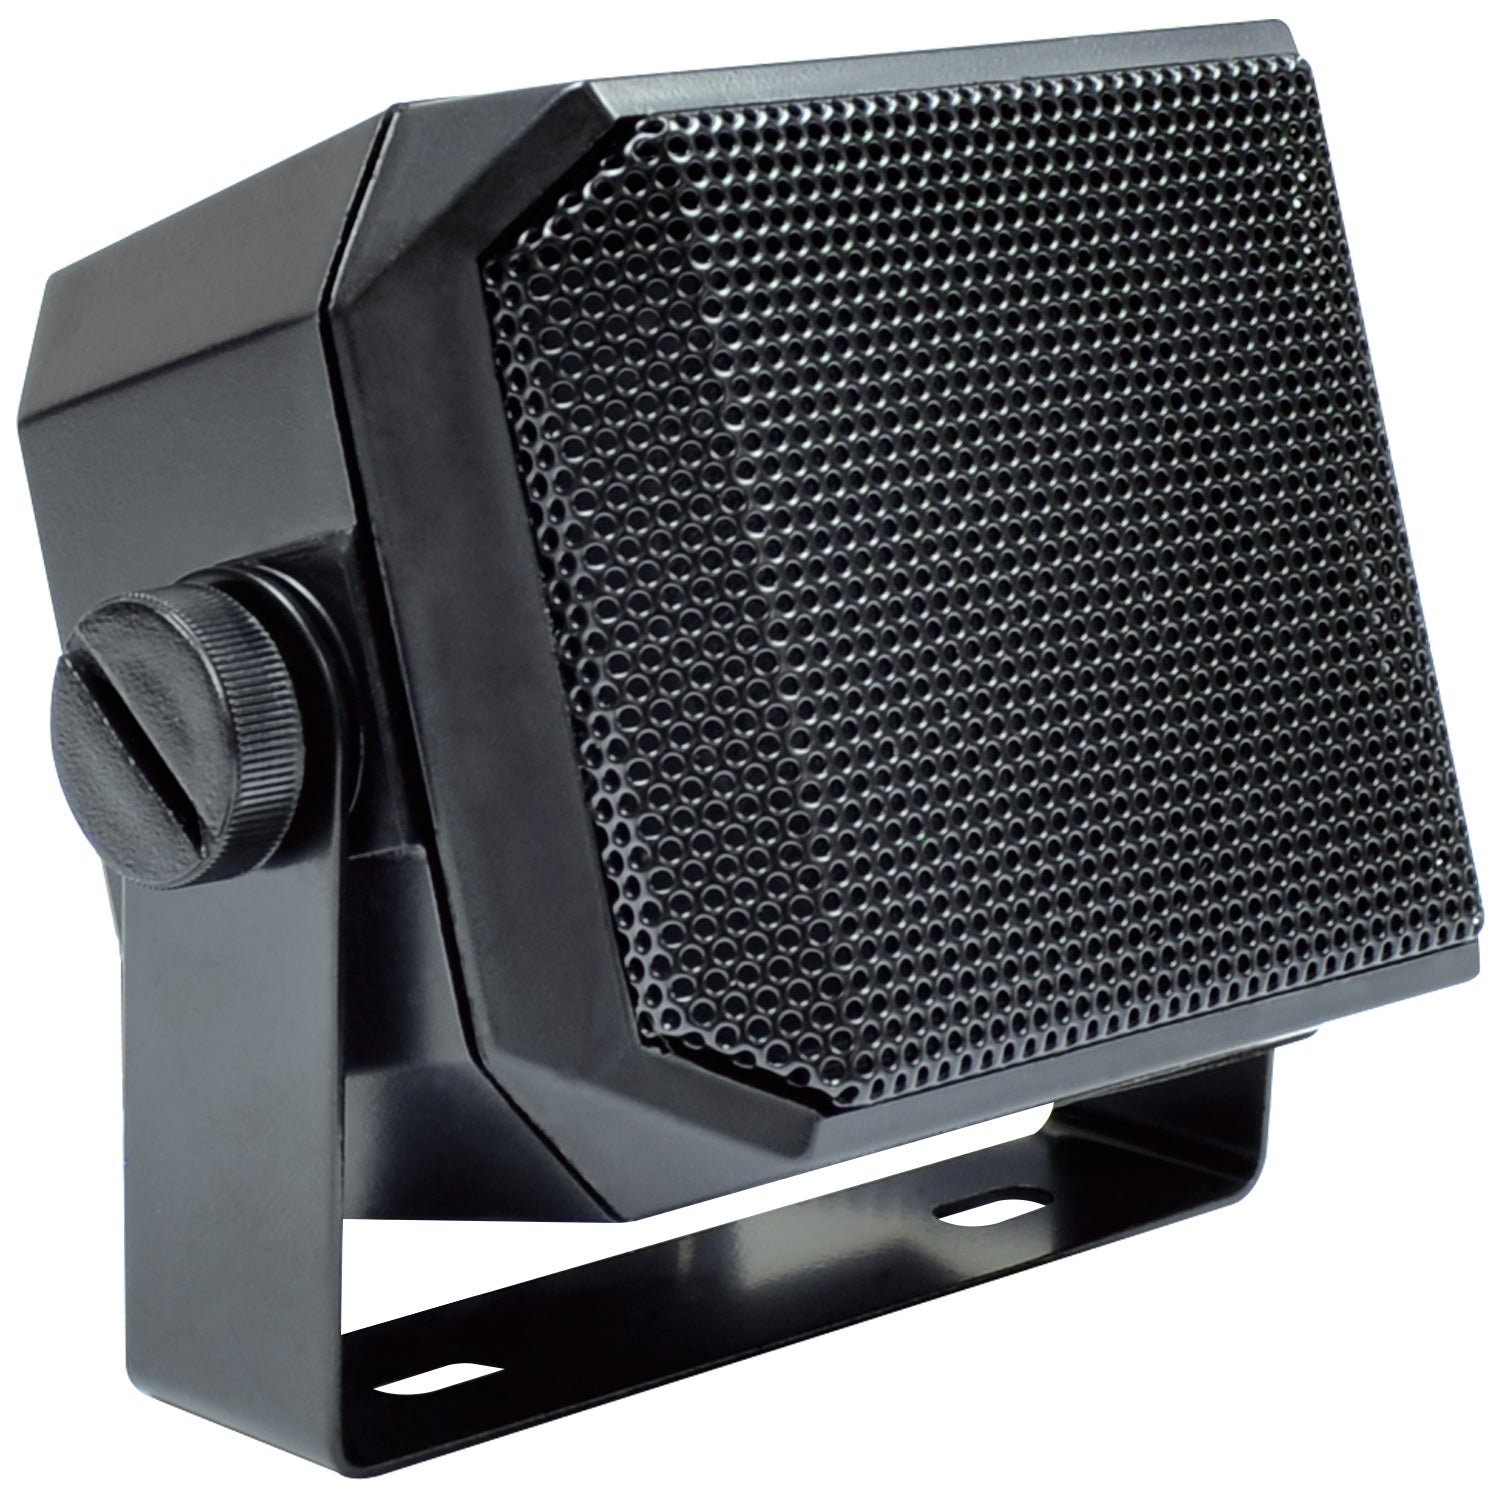 External Radio Scanner Speaker - 2.25" - Whistler Group